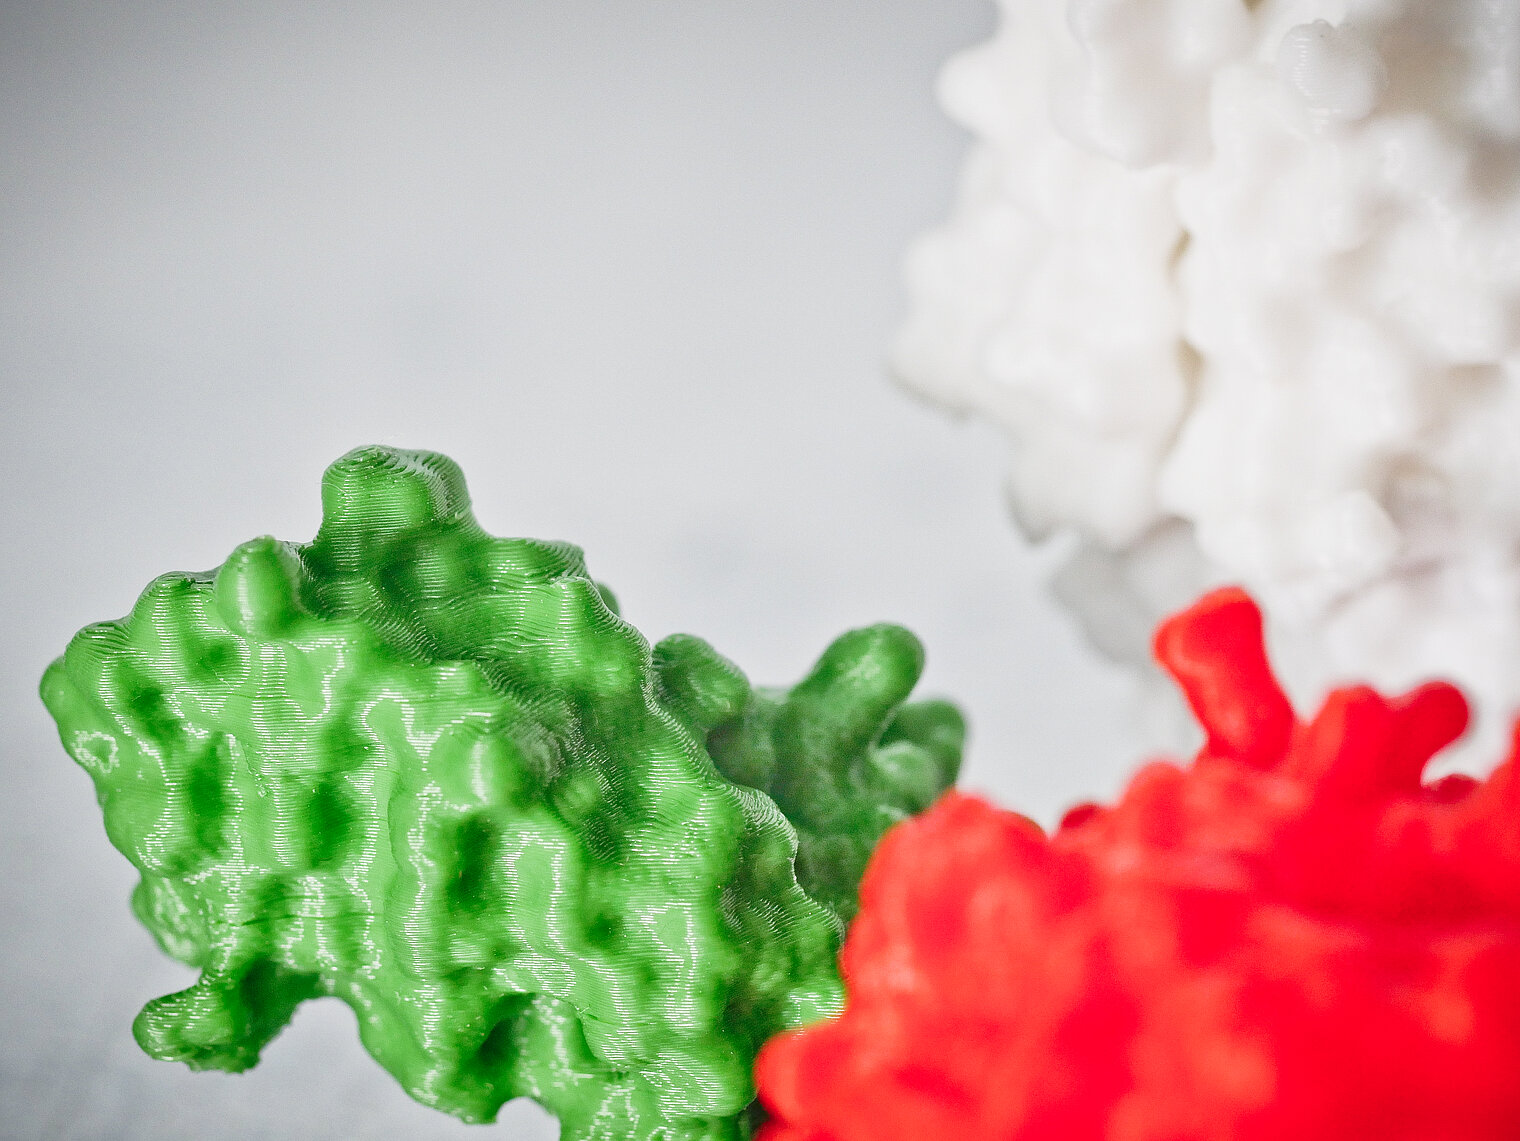 3D-Modelle von am HZI gelösten Proteinstrukturen.